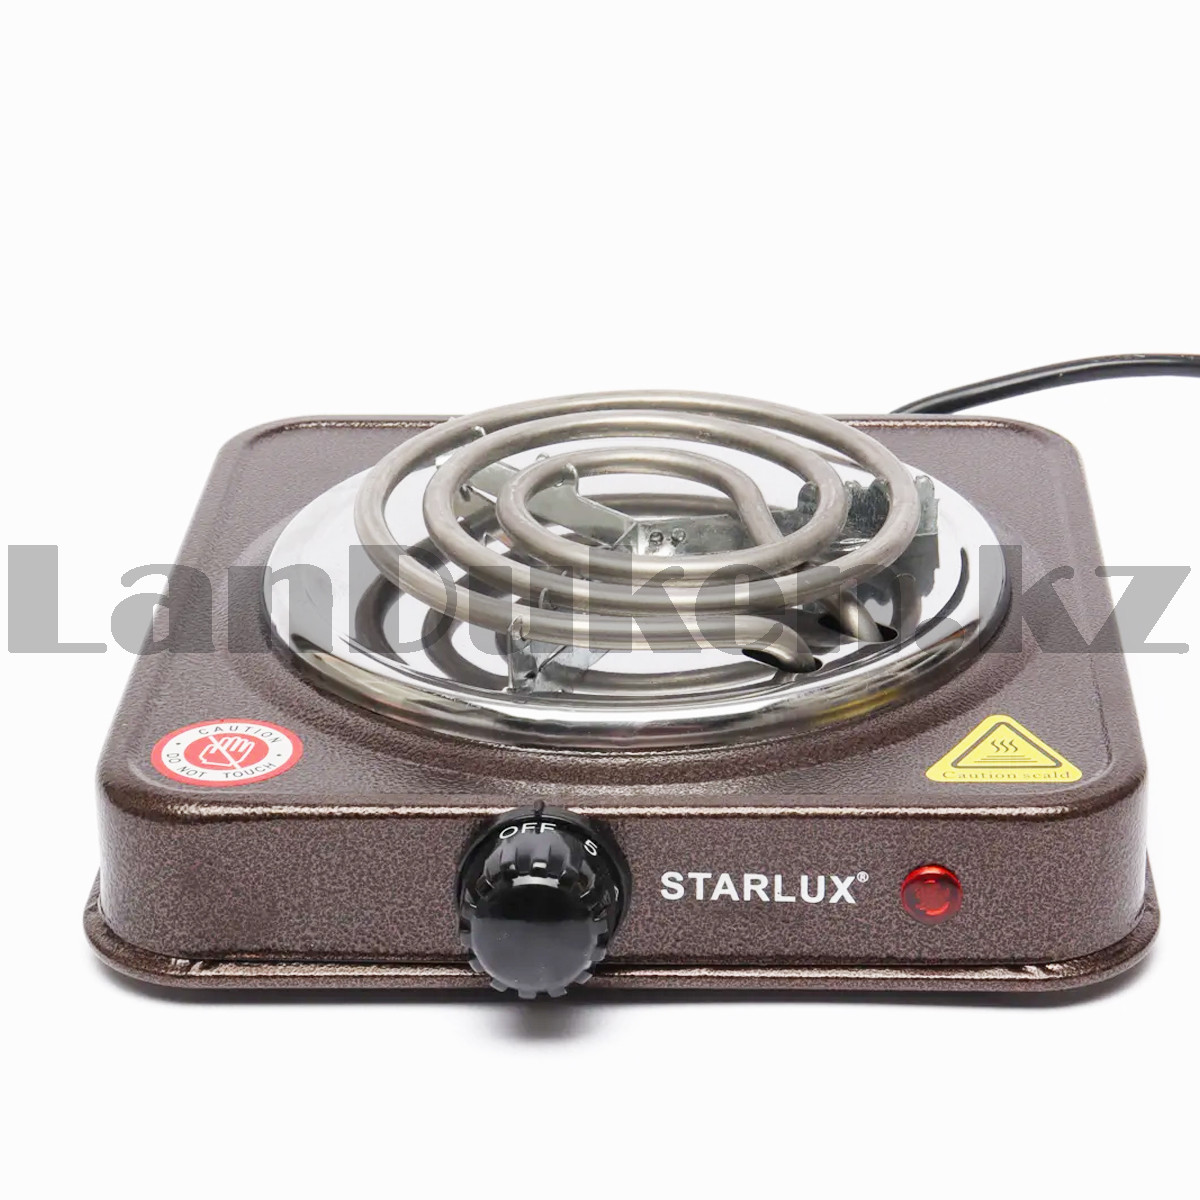 Электрическая одноконфорочная плита Starlux SHP 5811 коричневая